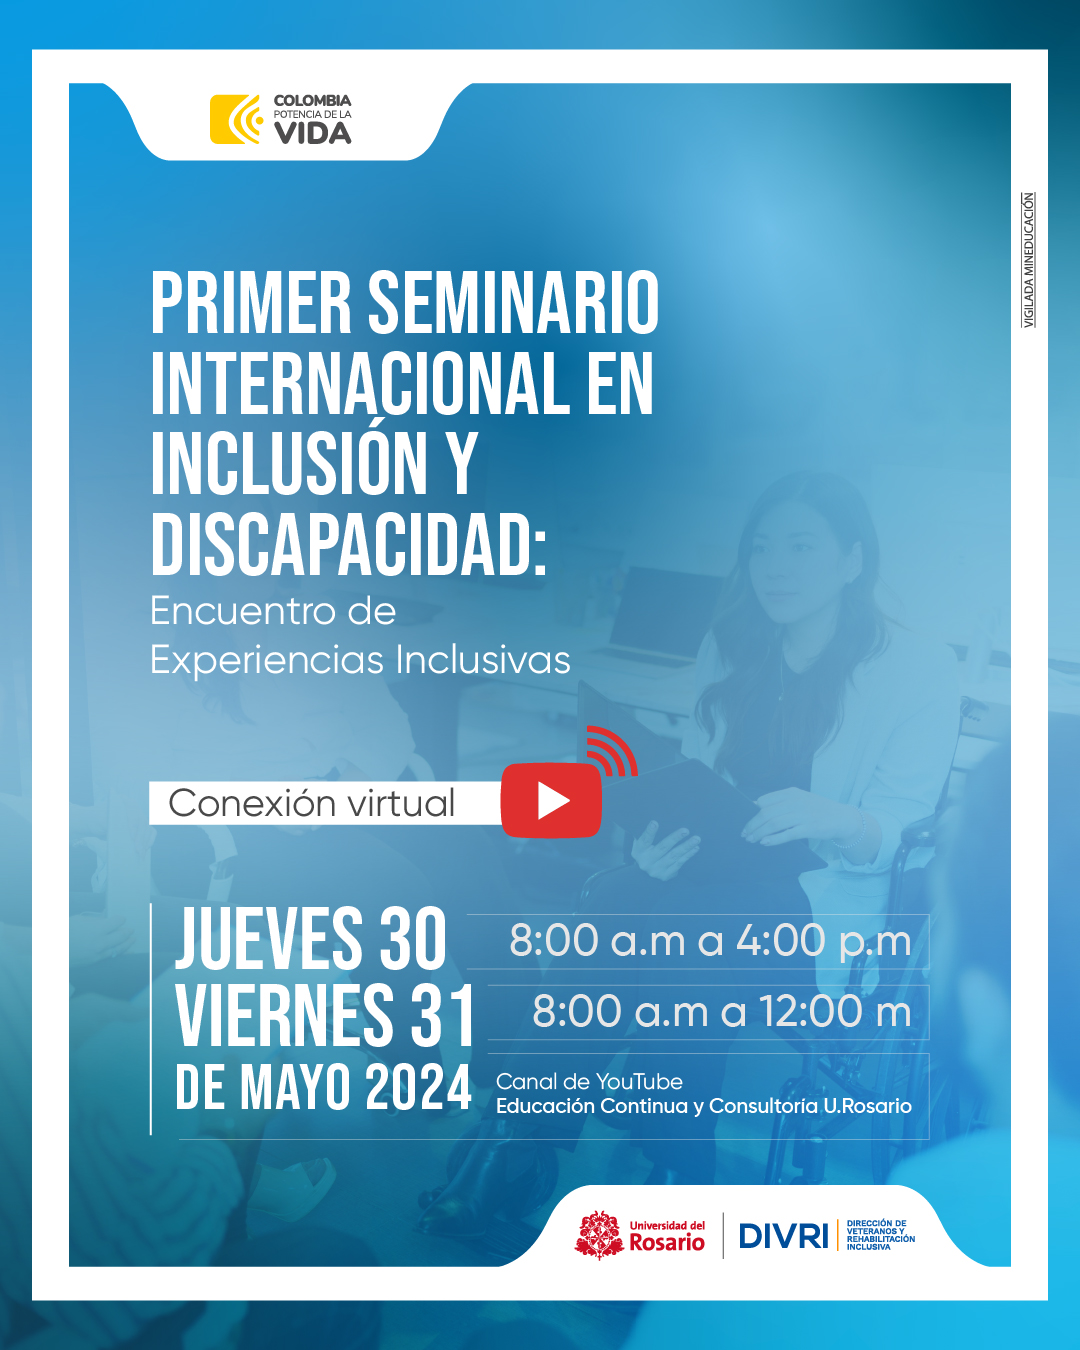 Primer seminario internacional en inclusión y discapacidad.